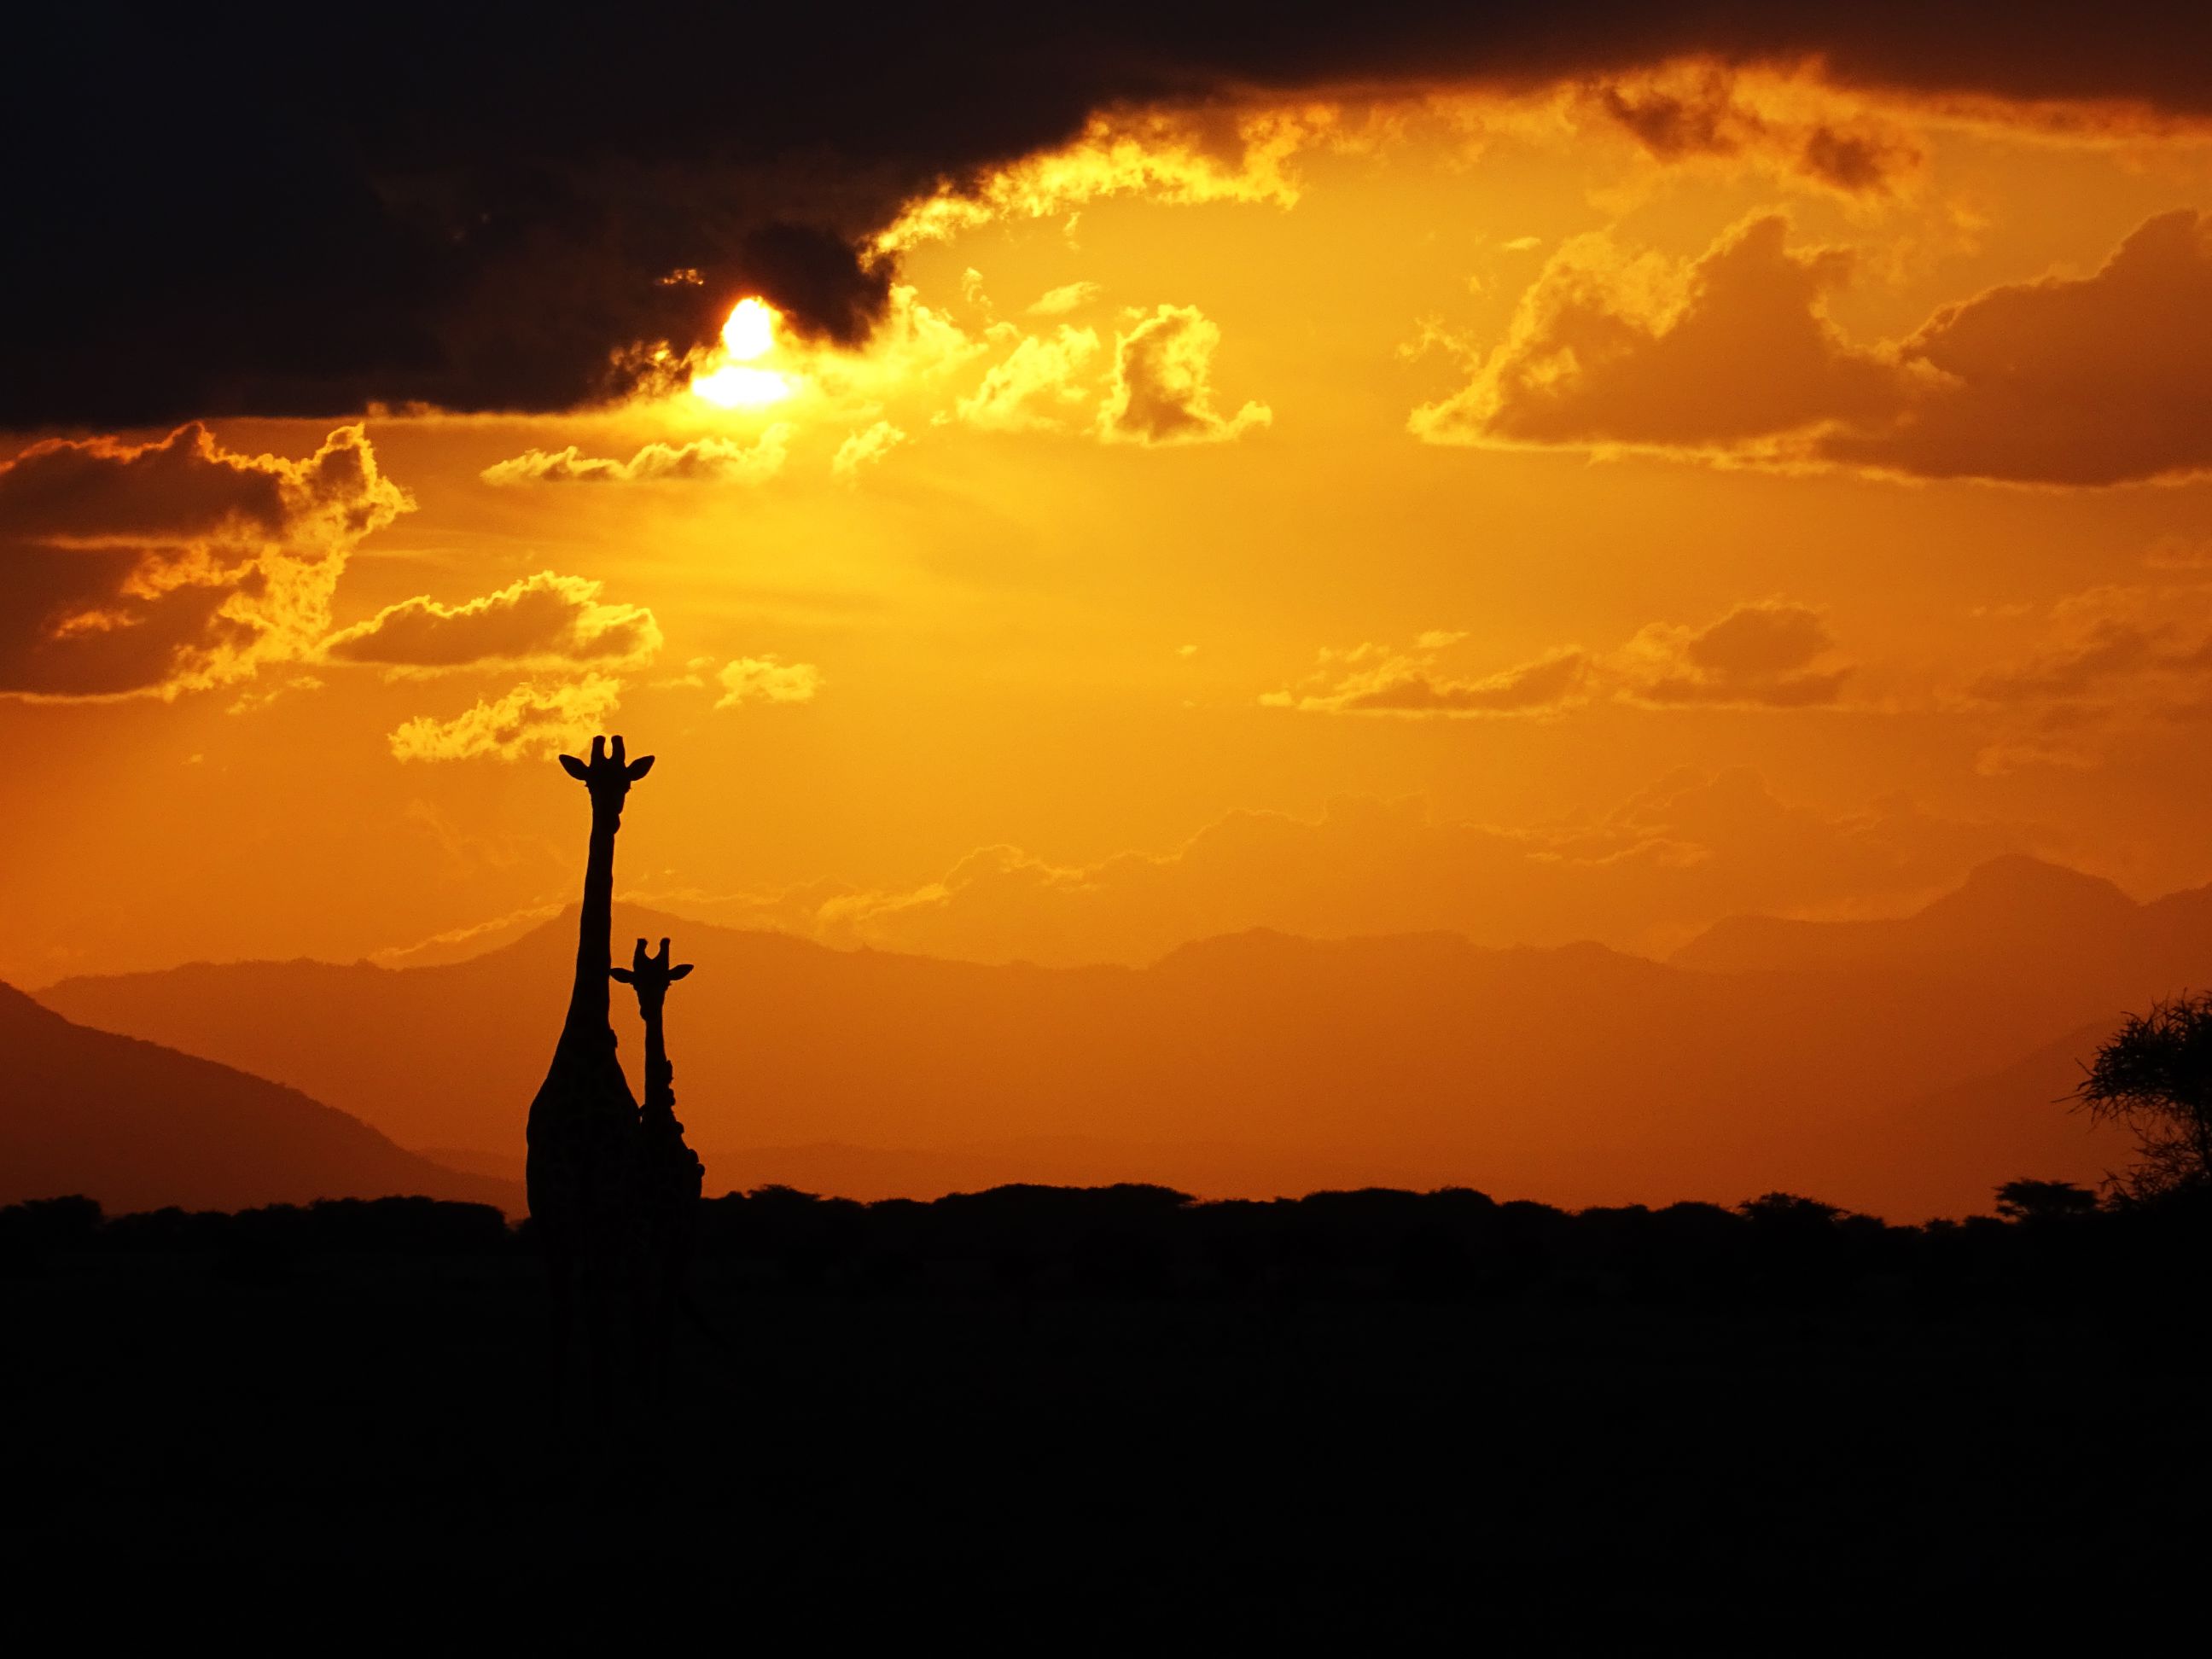 mum and baby giraffe in the setting sun (Tsavo East)